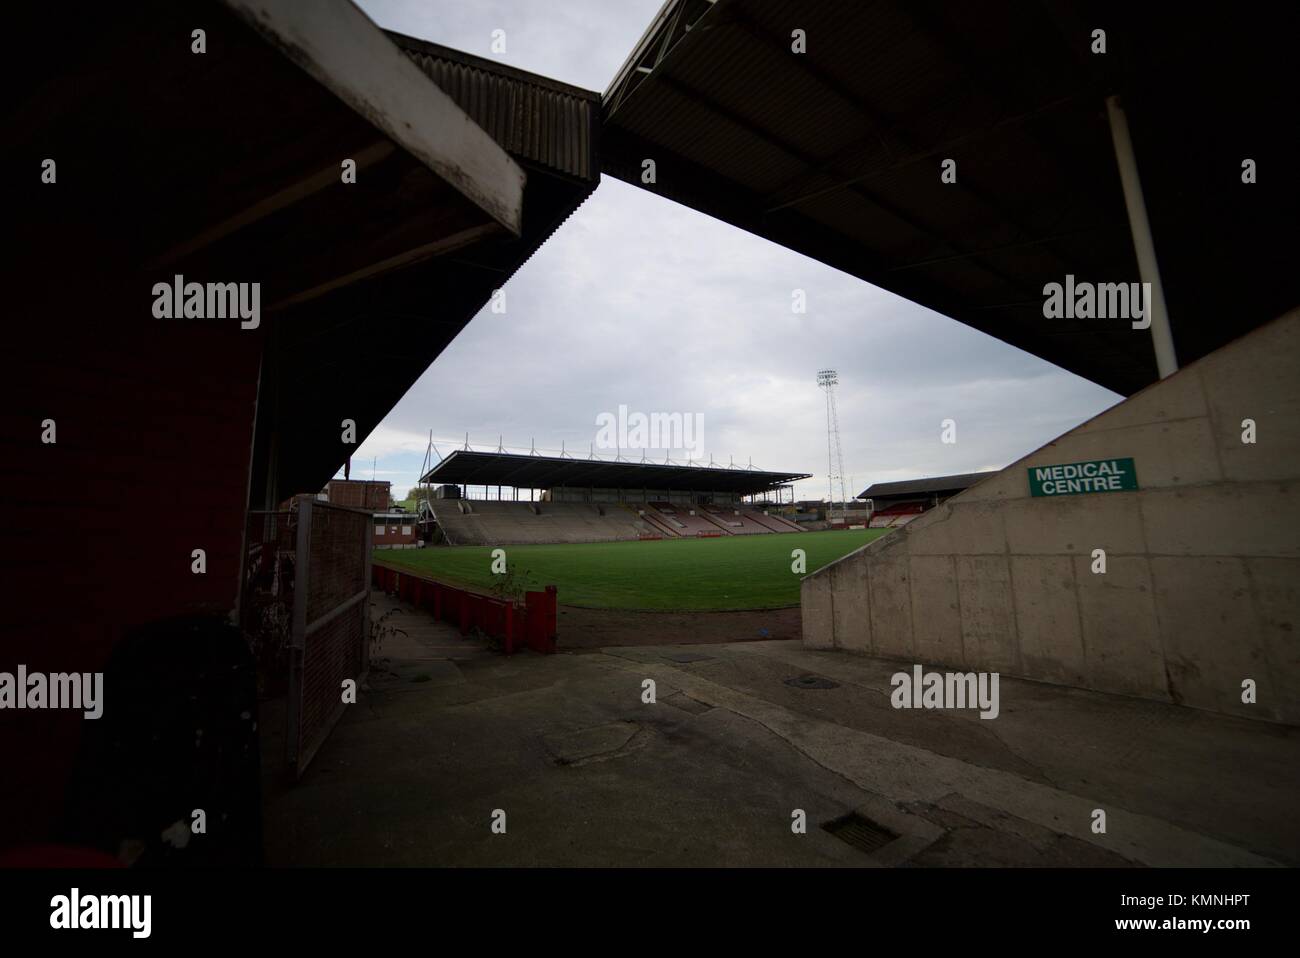 All'interno dell'abbandonato Millmoor stadio di calcio a Rotherham. Abbandonato un campo di calcio in Inghilterra. Foto Stock